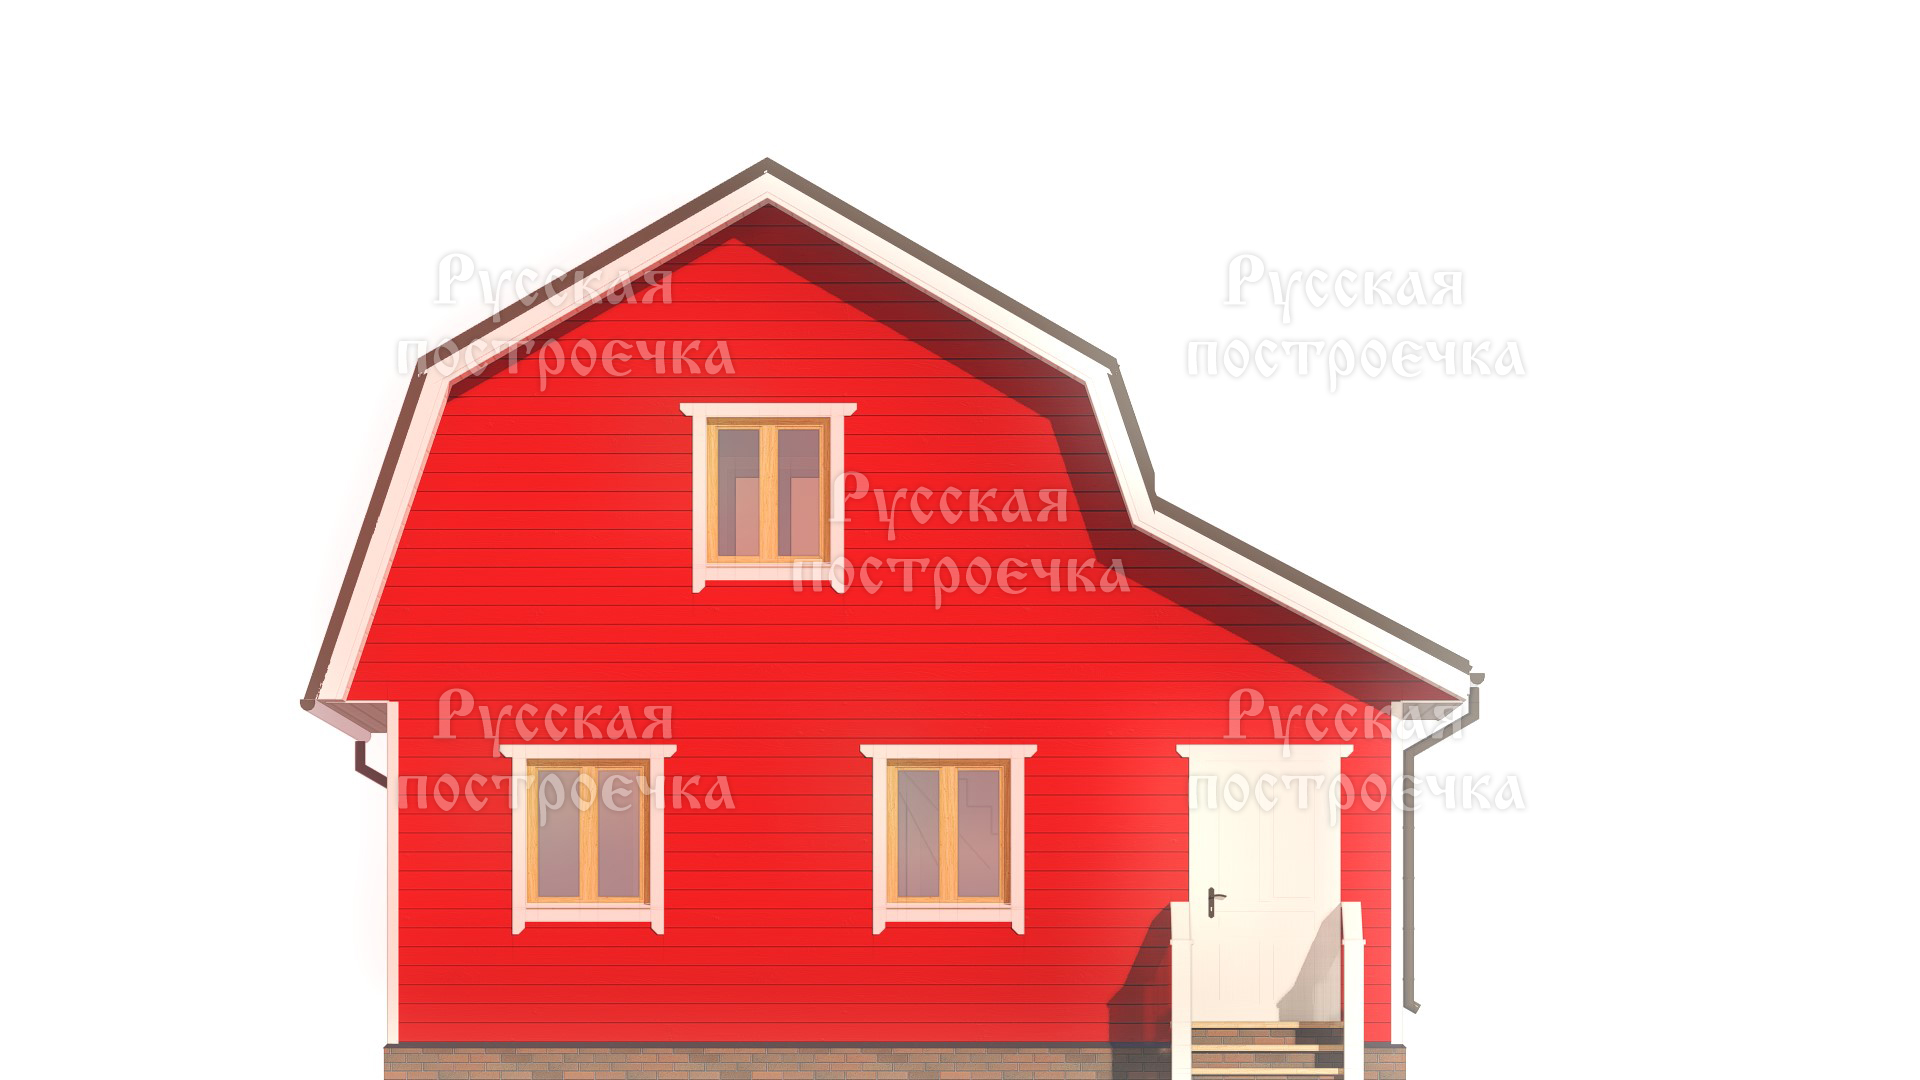 Каркасный дом 8х7 с мансардой, проект КД-56, цены, фото, комплектации - вид 5